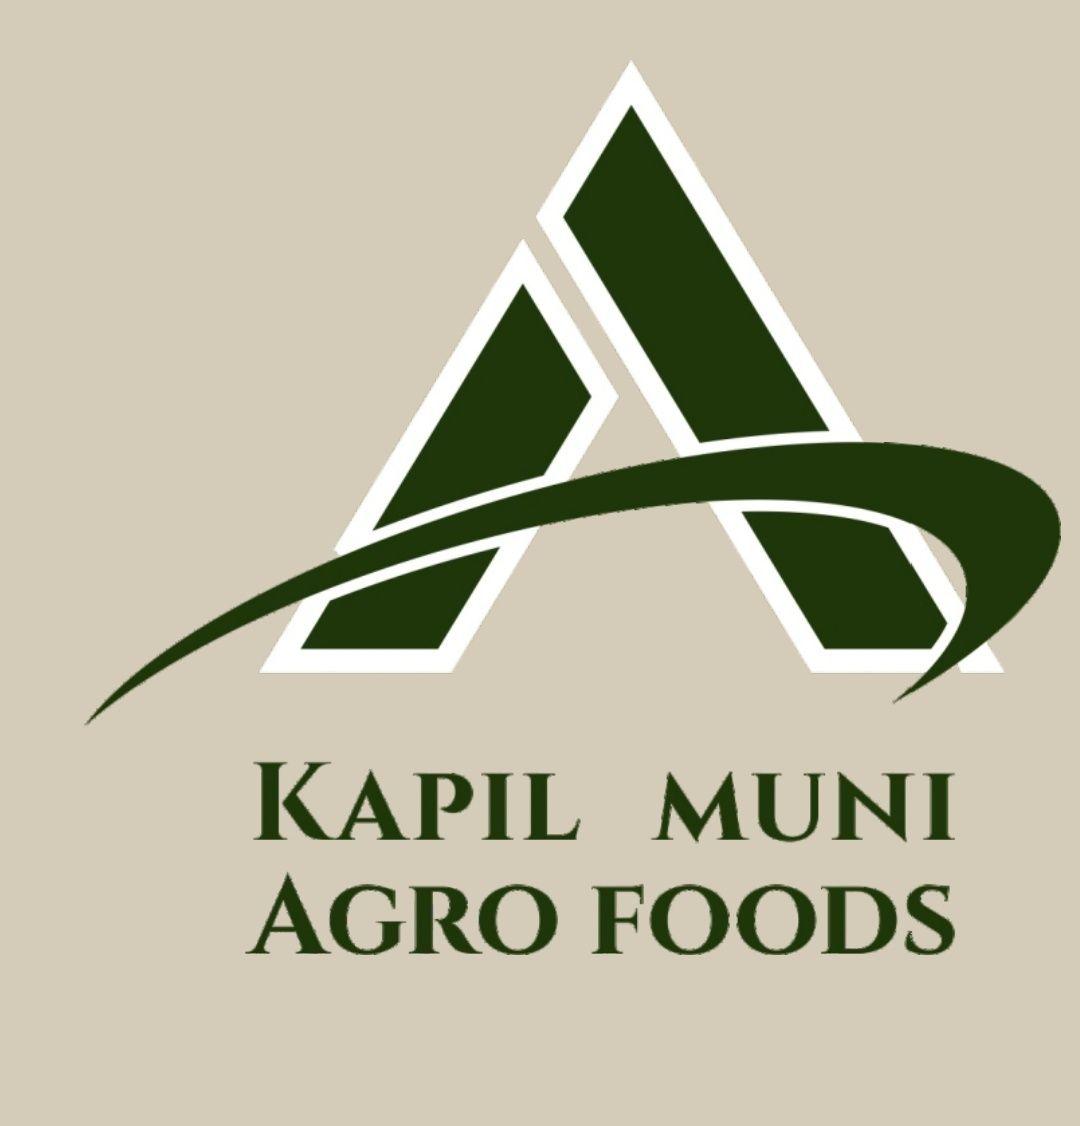 KAPIL MUNI AGRO FOODS